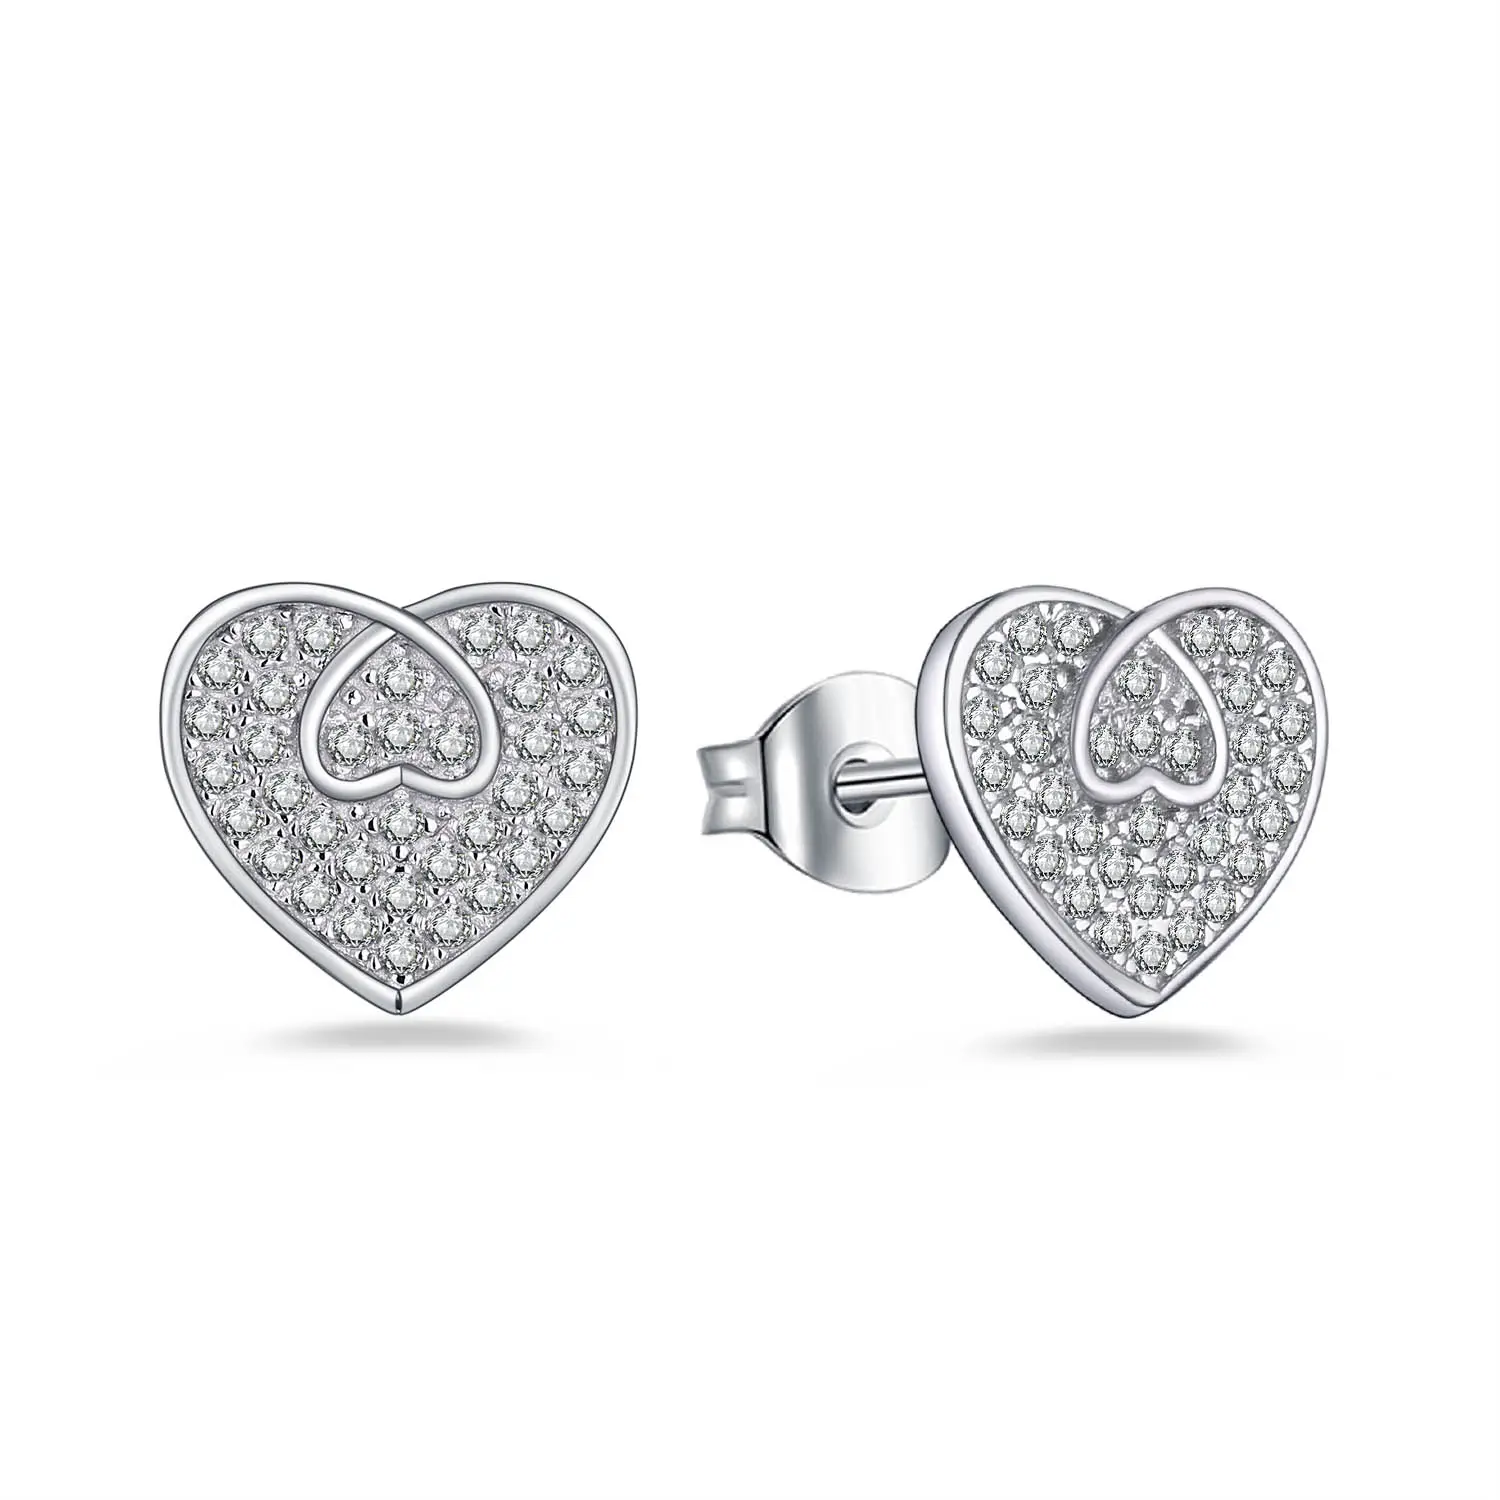 Hot Selling 925 Sterling Silver Cubic Zircon Heart Earings Jewelry Women Heart Stud Earrings For Valentines Day Gift